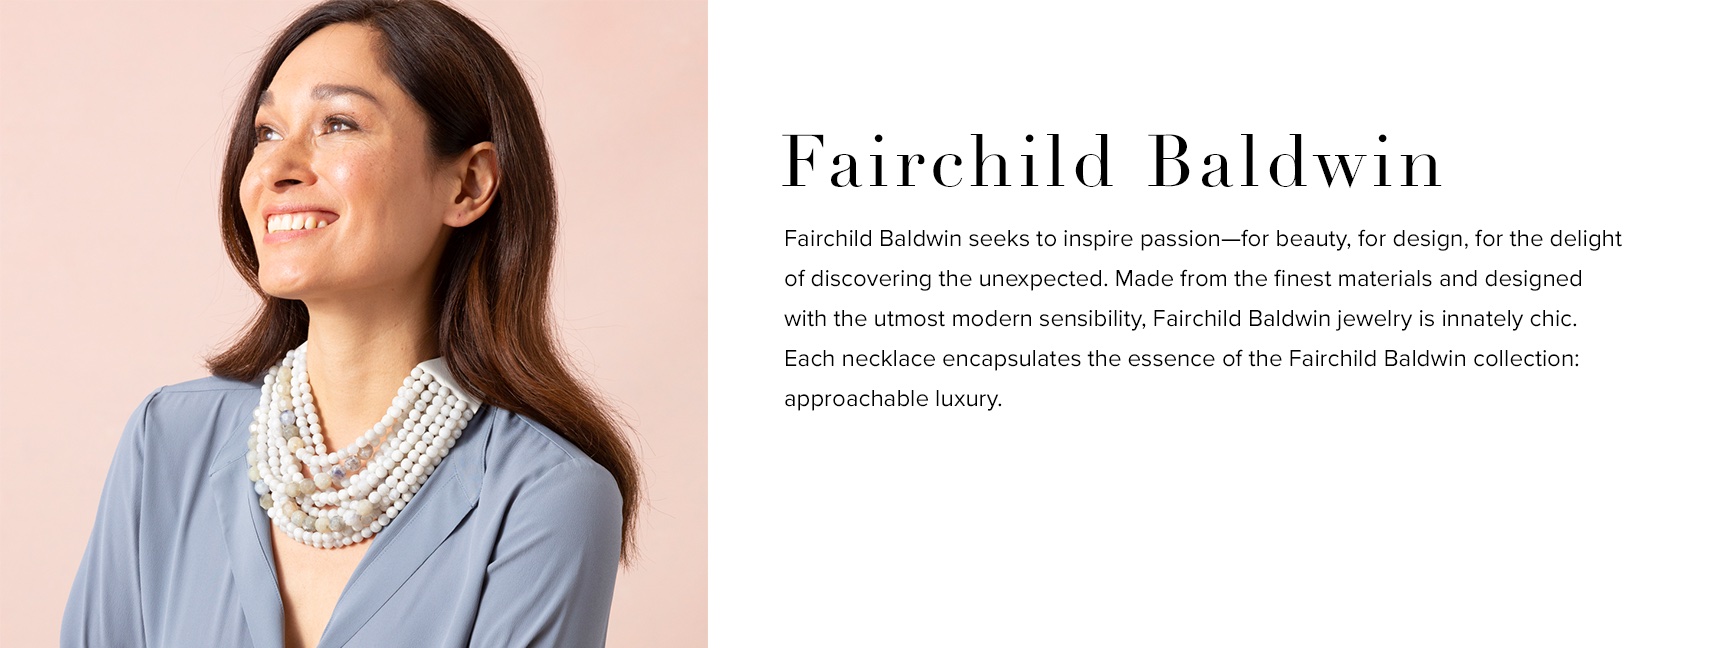 Fairchild Baldwin